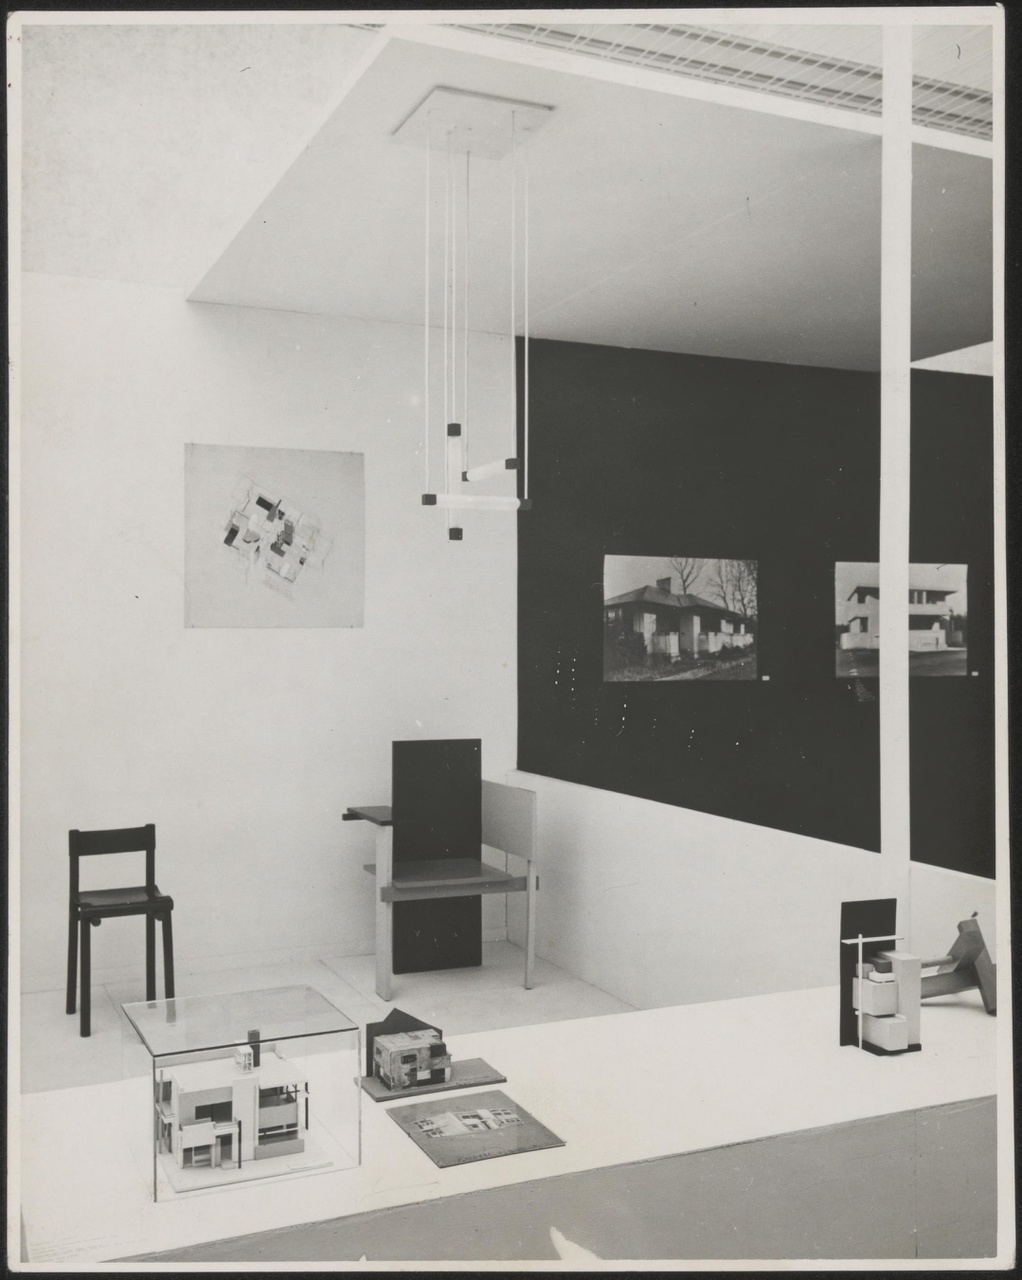 Afbeelding van tentoonstelling De Stijl SMA, 1951, overzicht gedeelte afdeling Rietveld